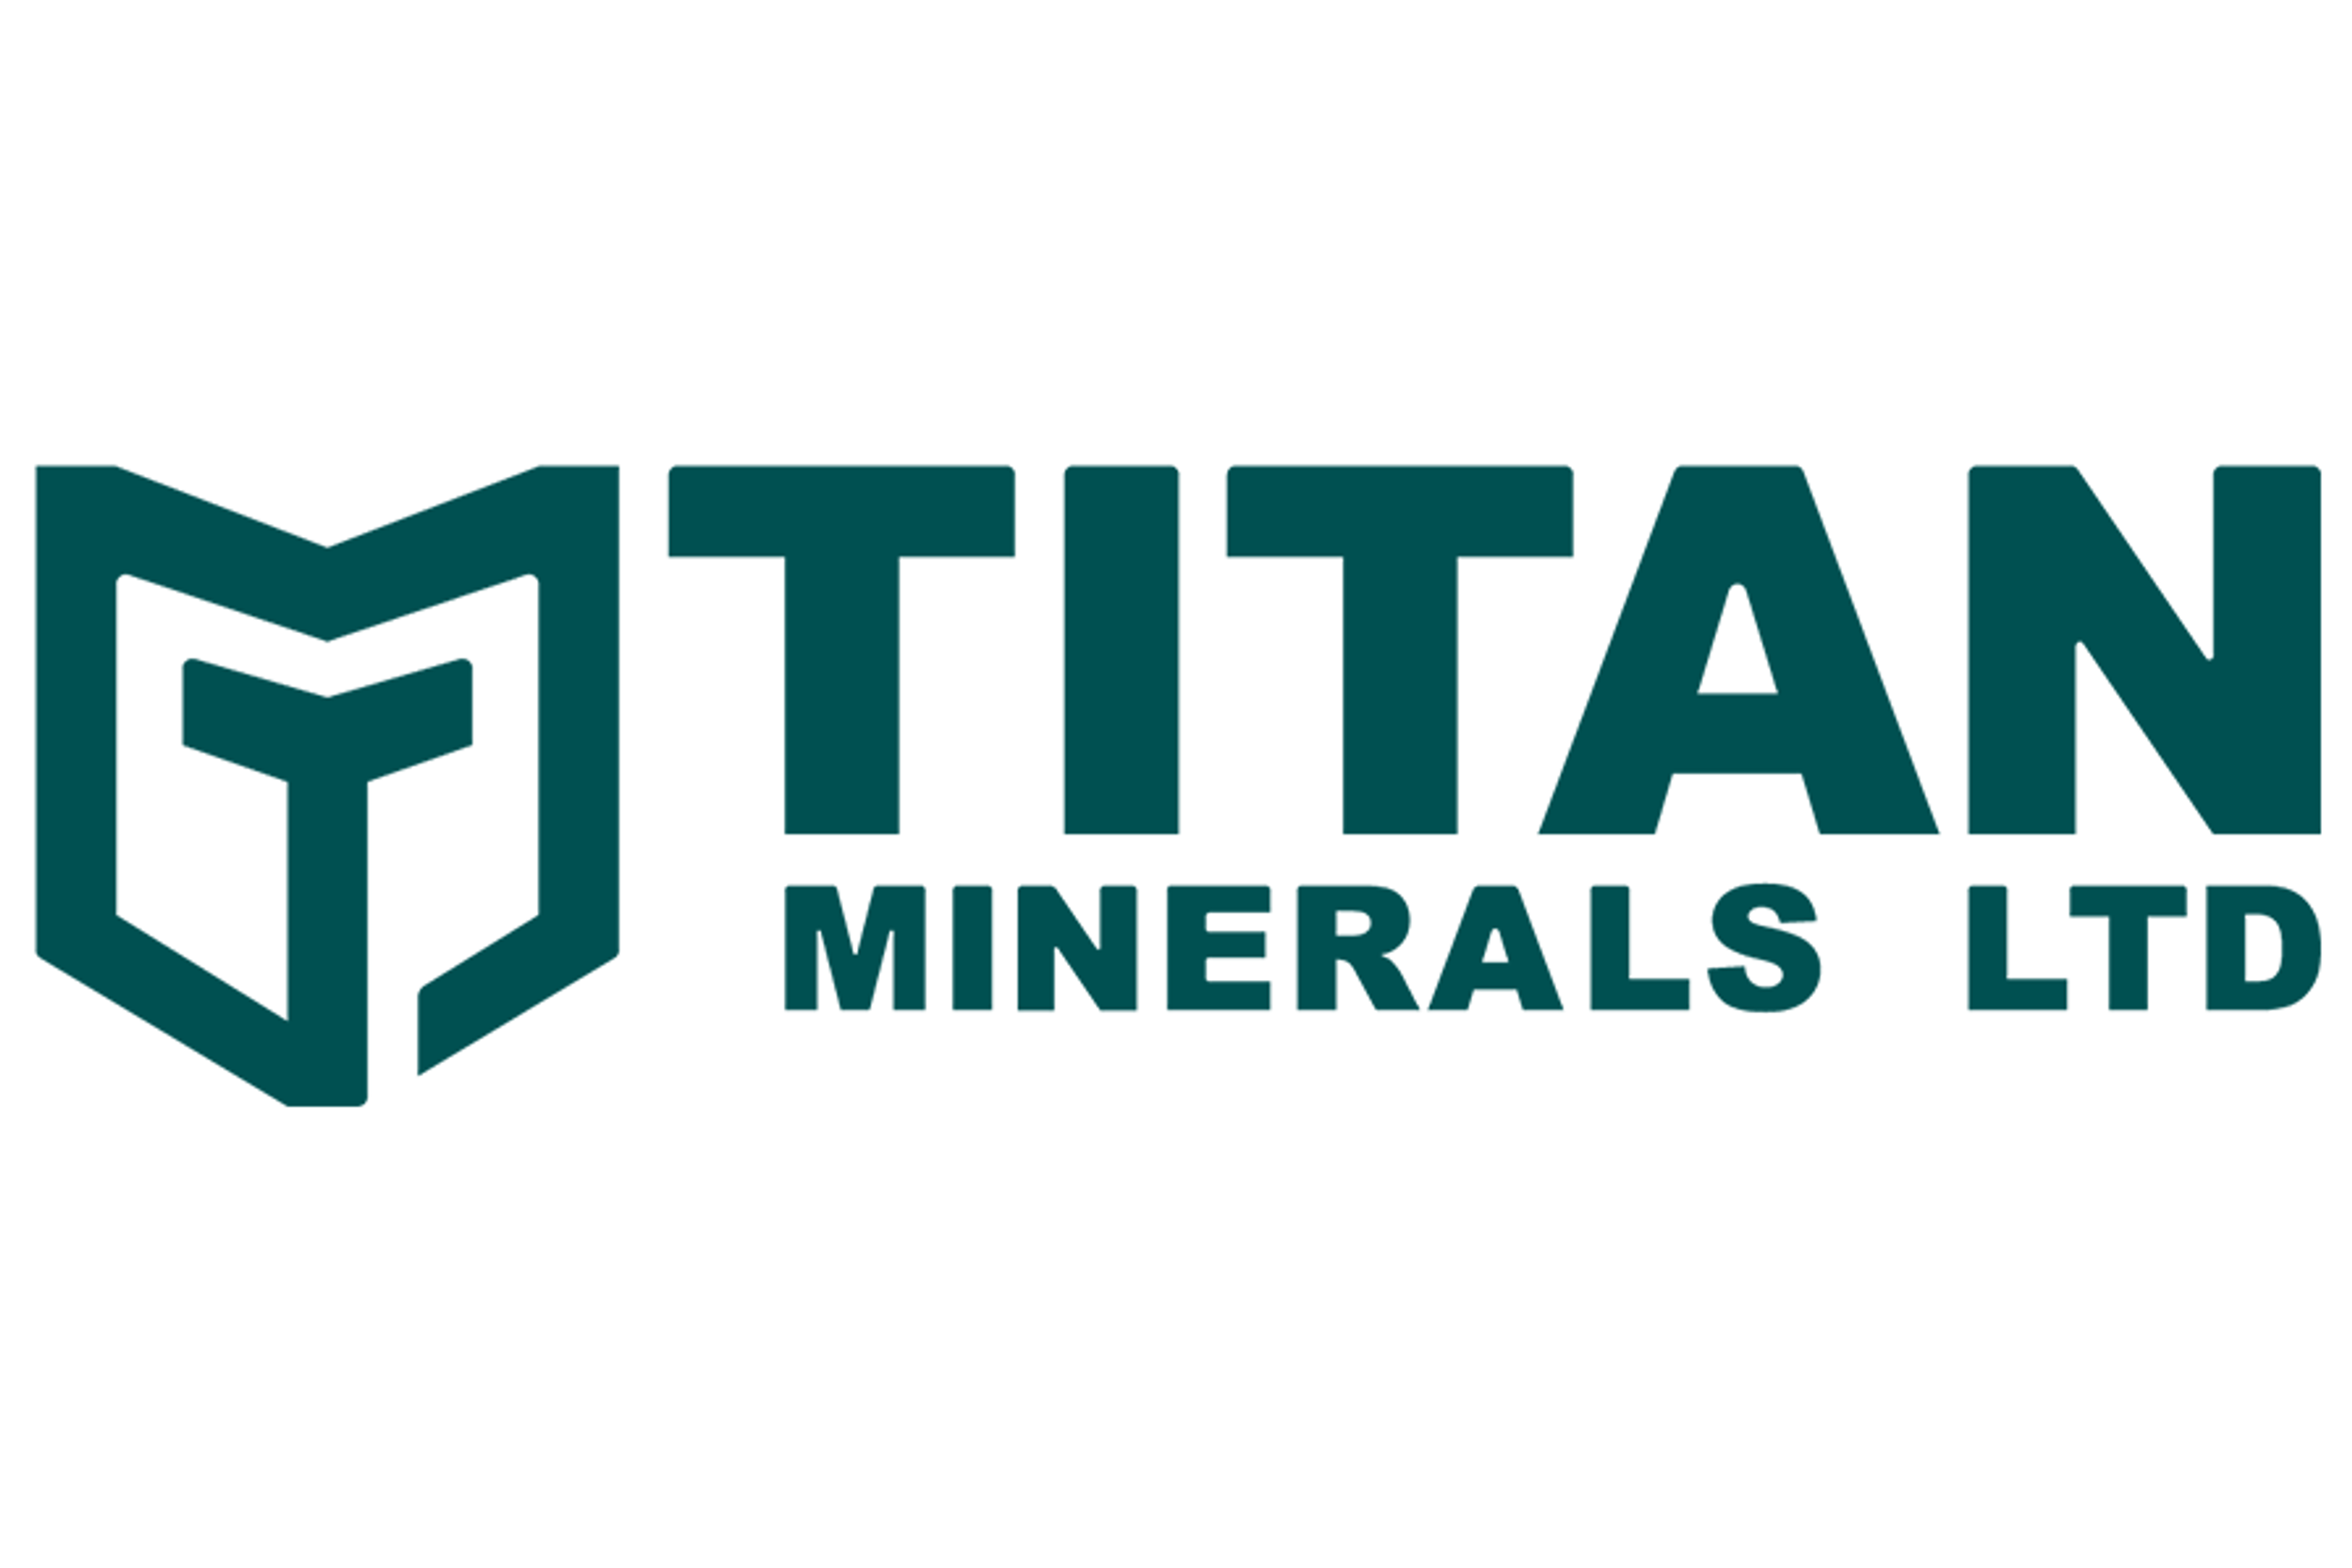 Titan Minerals